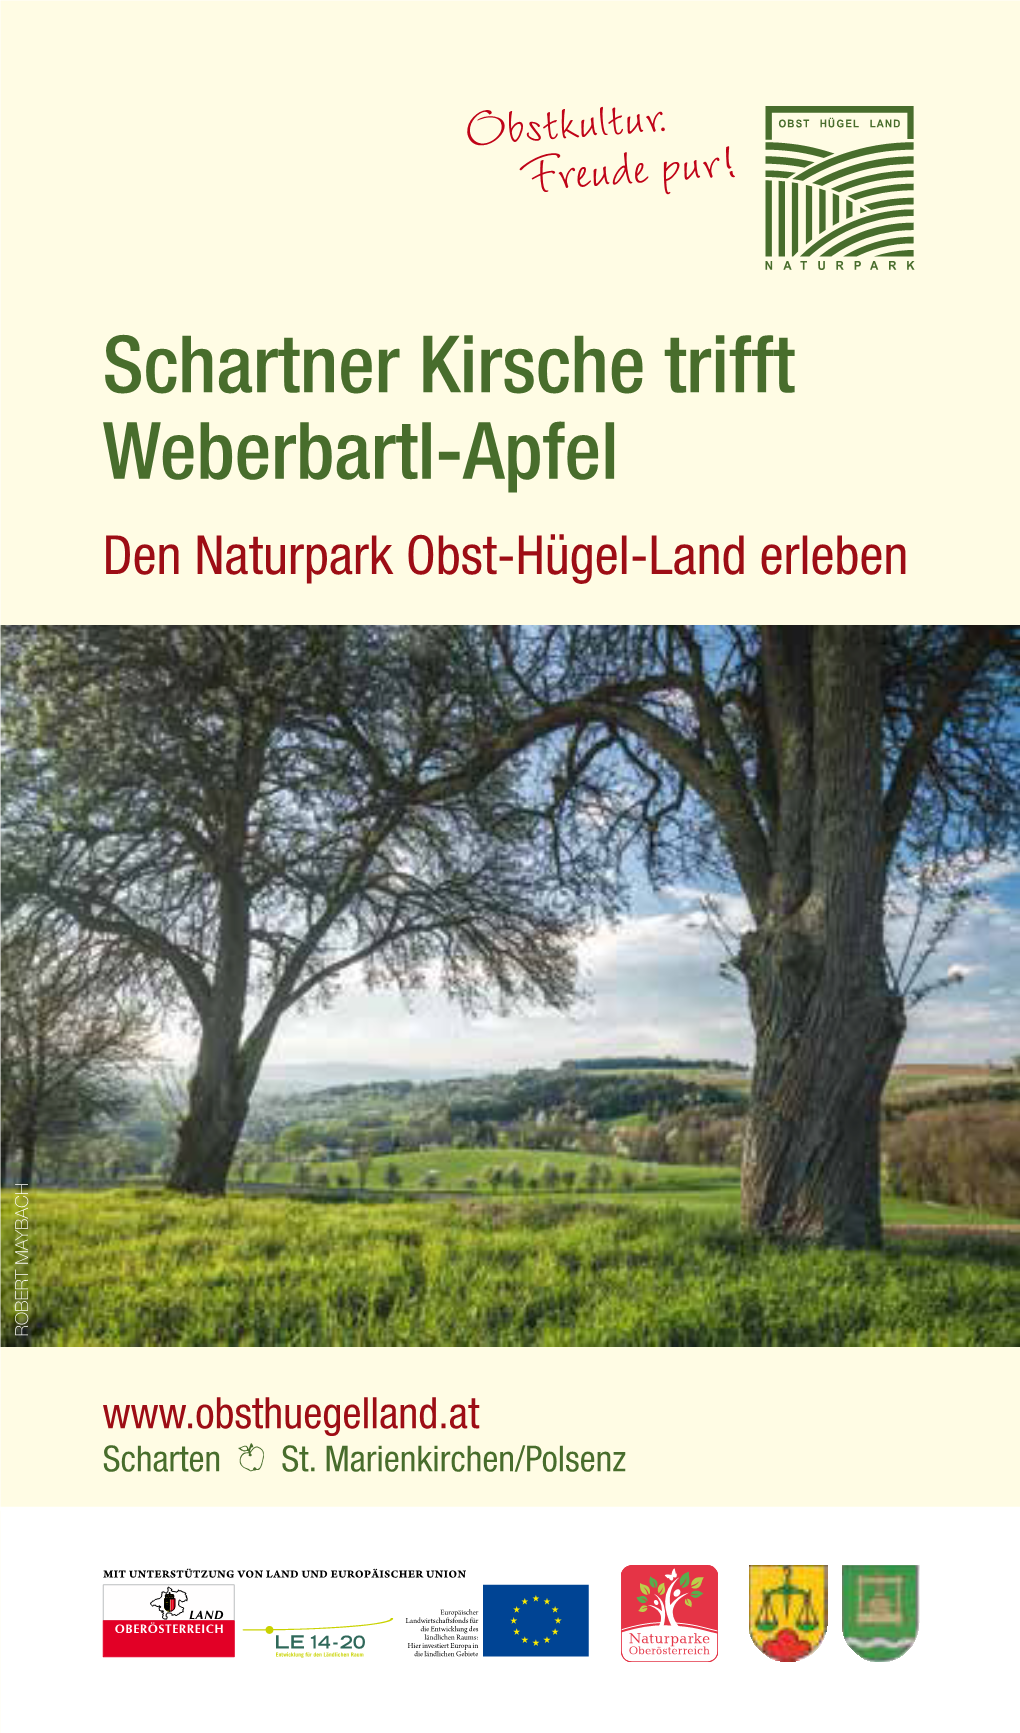 Schartner Kirsche Trifft Weberbartl-Apfel Den Naturpark Obst-Hügel-Land Erleben ROBERT MAYBACH